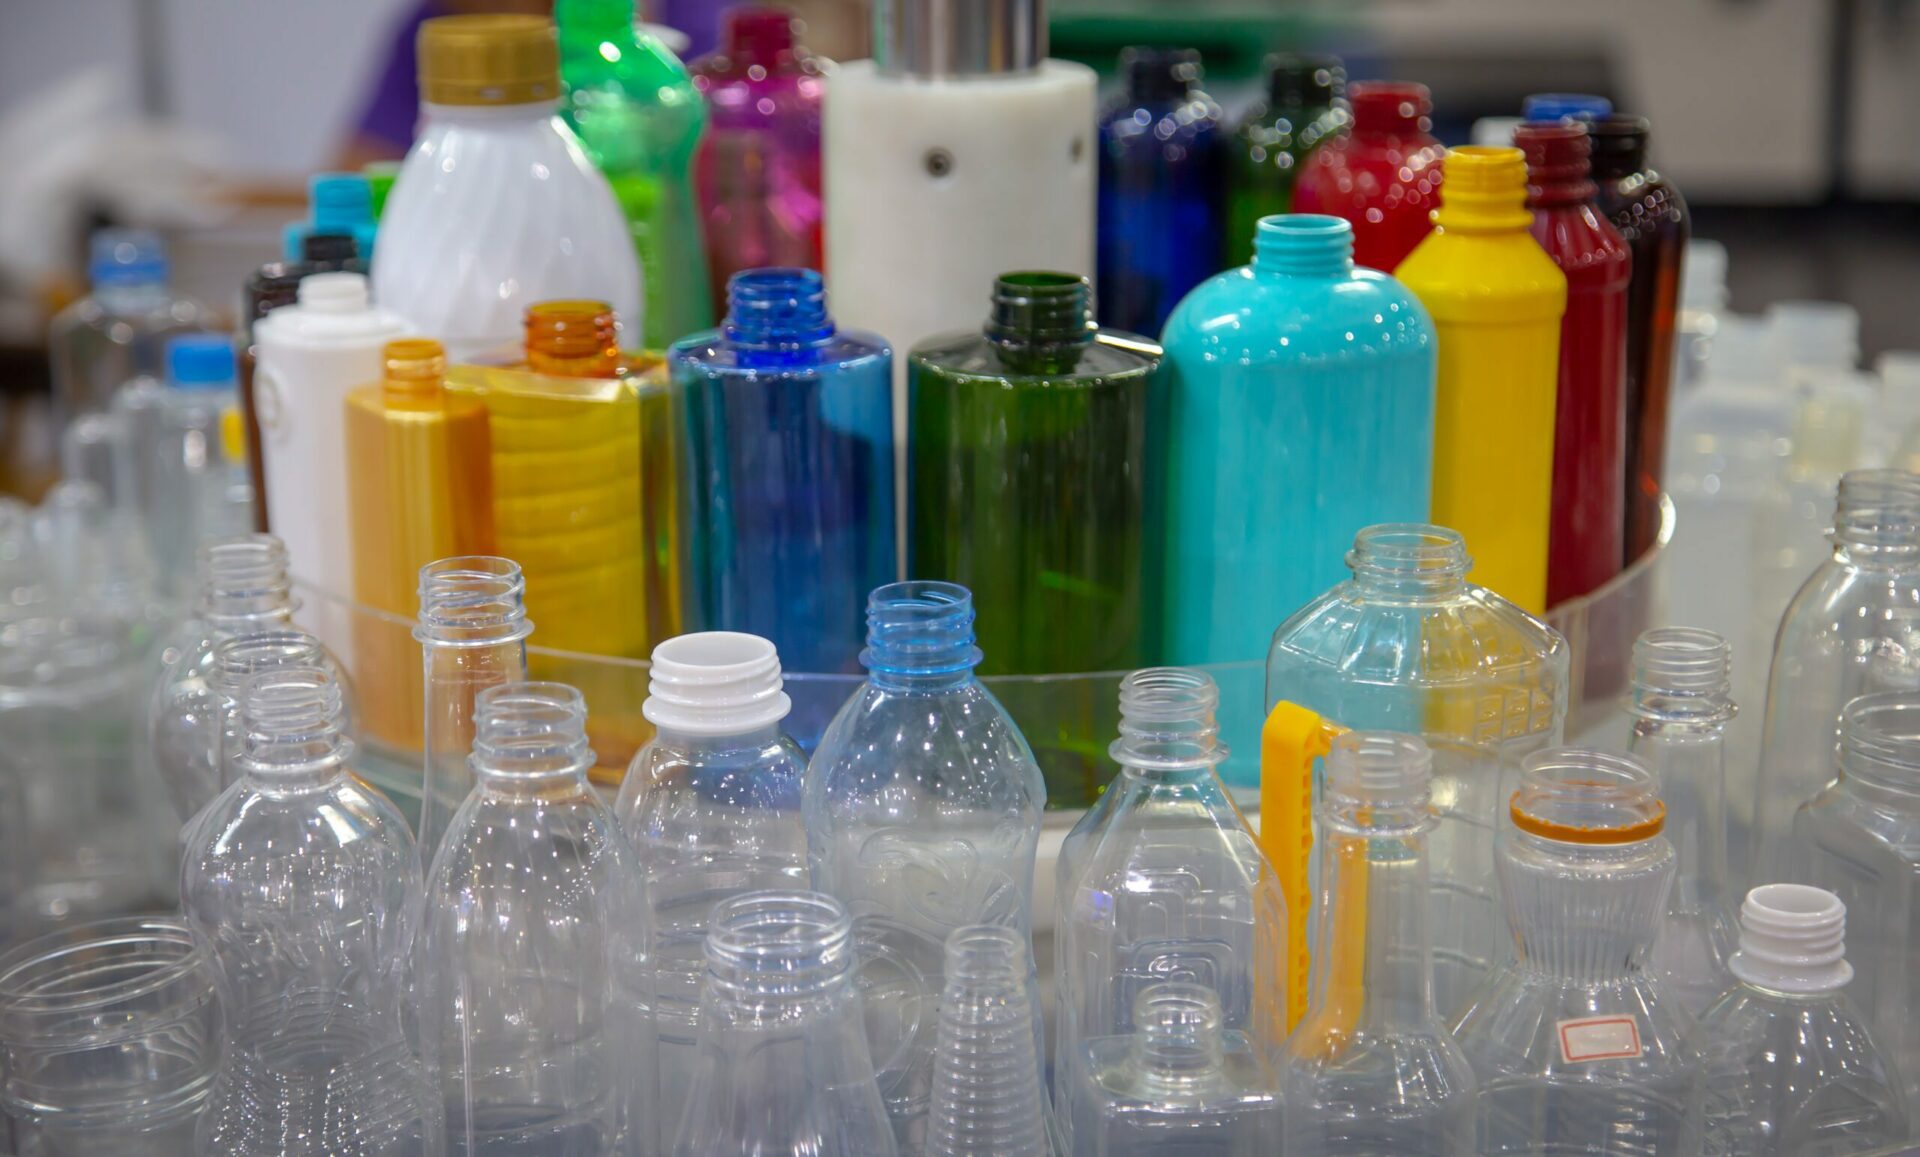 Los productos plásticos, incluidos los microplásticos, son una preocupación debido a su presencia ahora inquebrantable en todo el mundo, que filtra los EDC al medio ambiente.